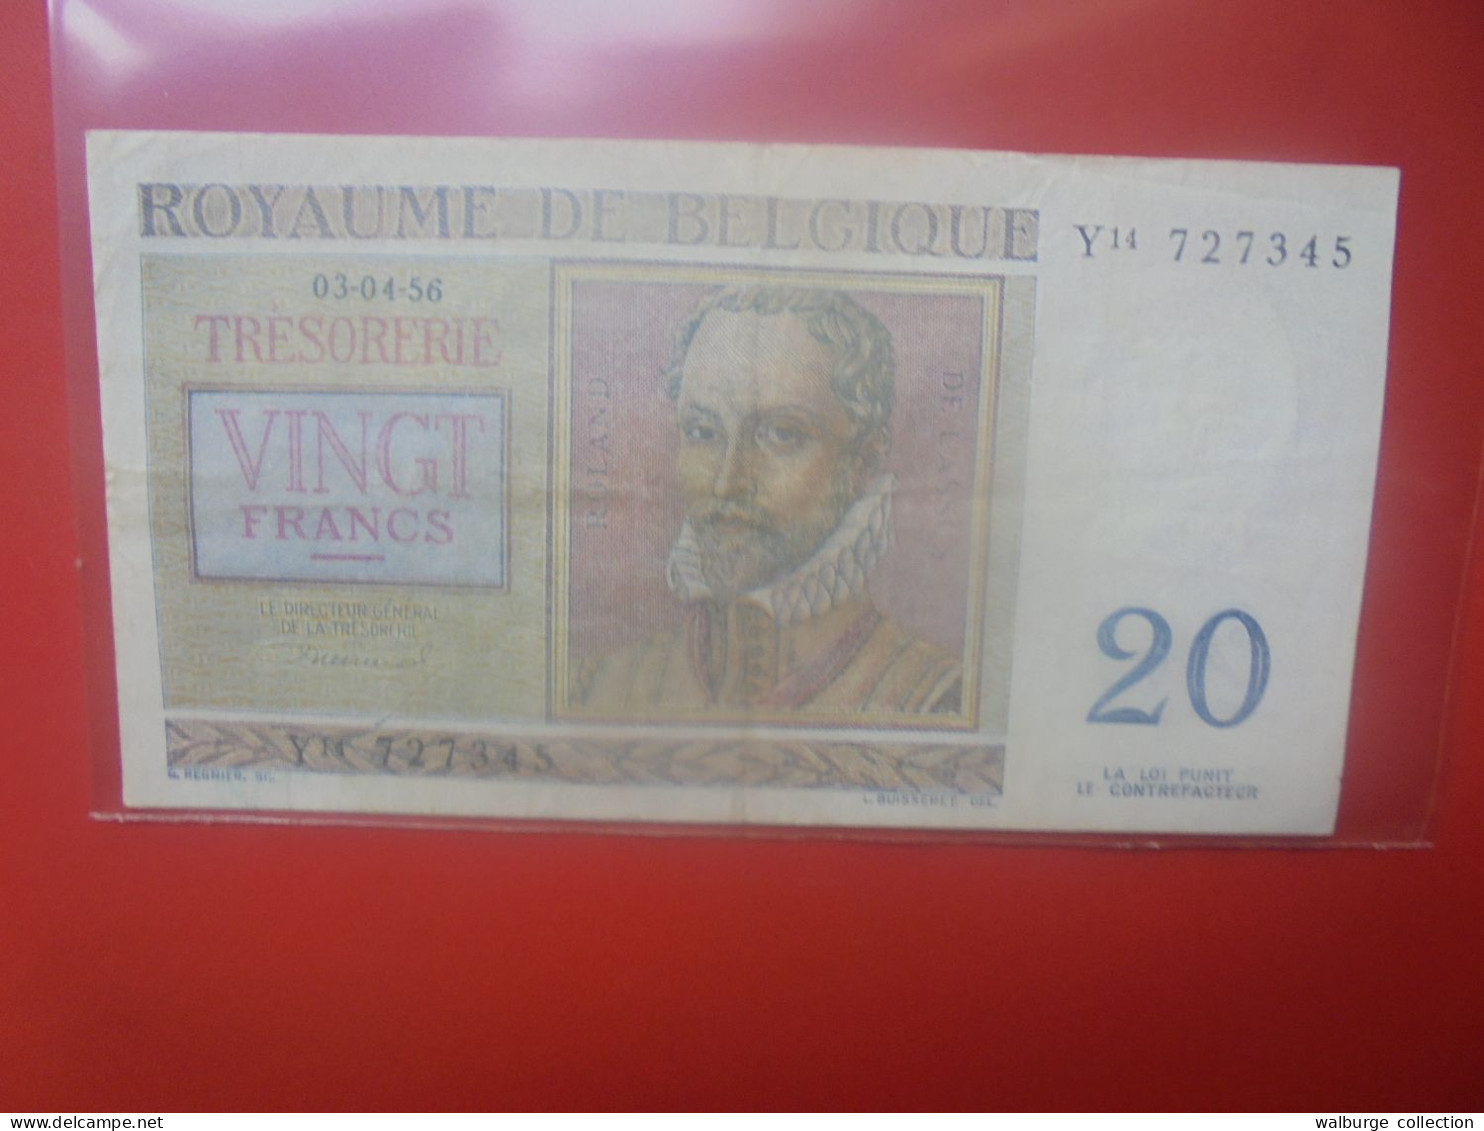 BELGIQUE 20 Francs 1956 Circuler (B.33) - 20 Franchi